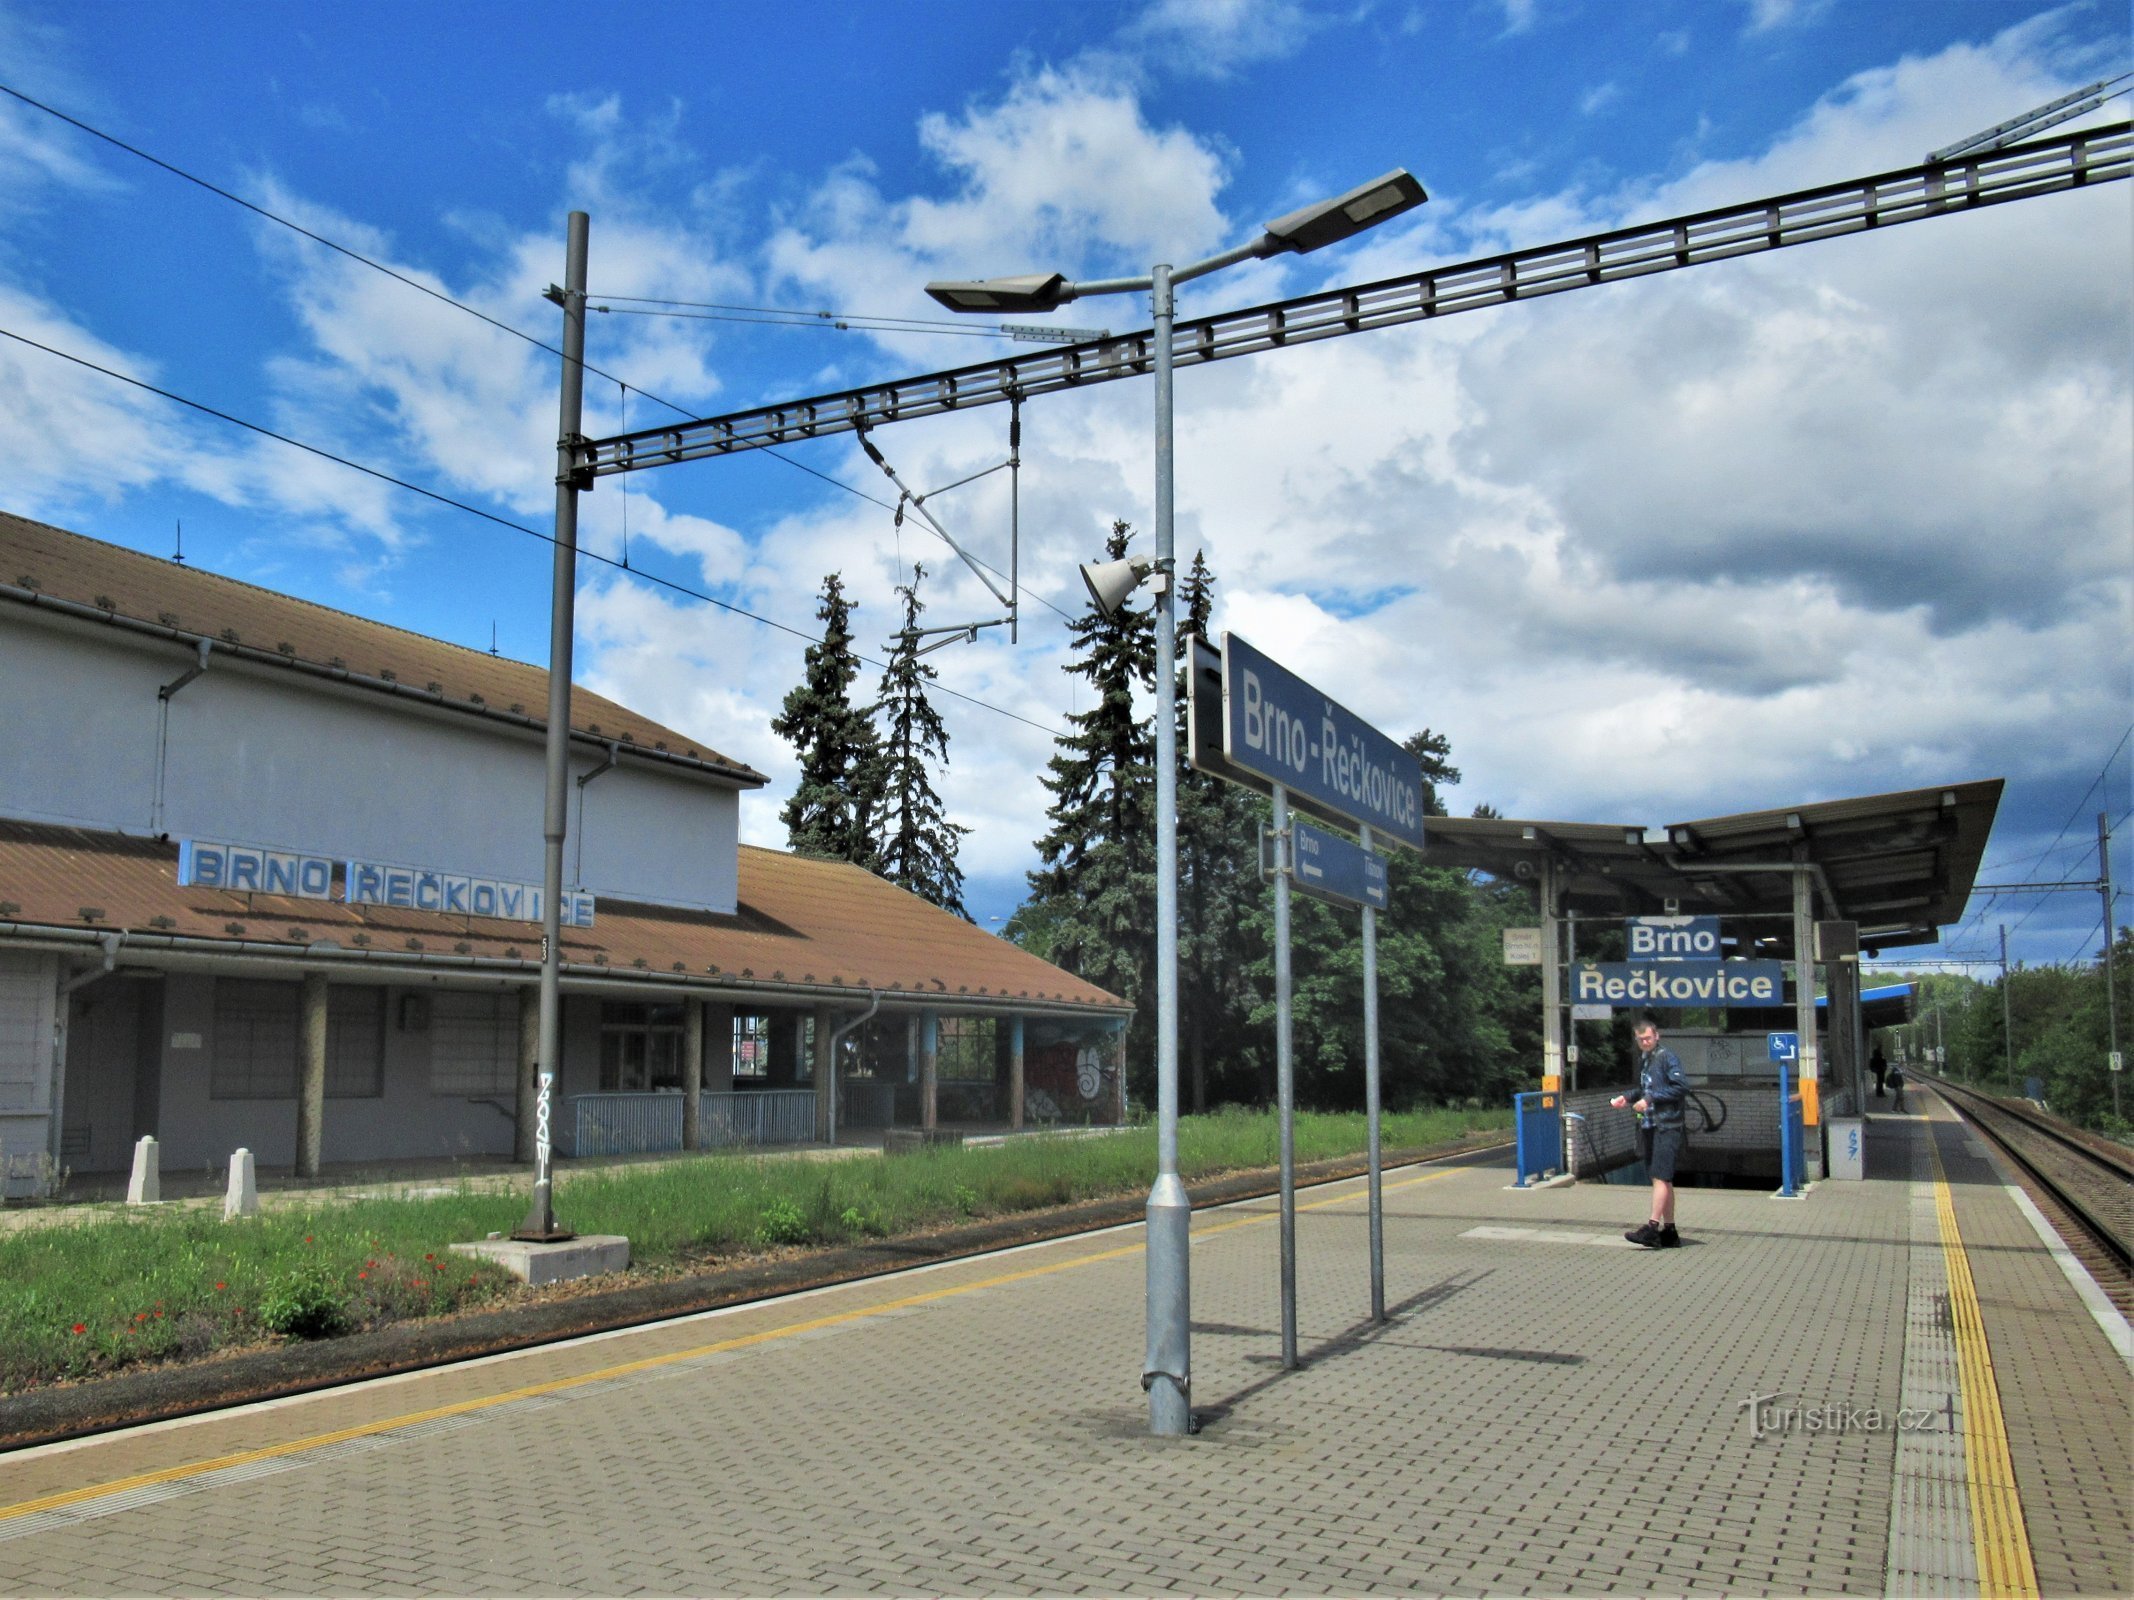 Vasútállomás Brno-Řečkovice-ban